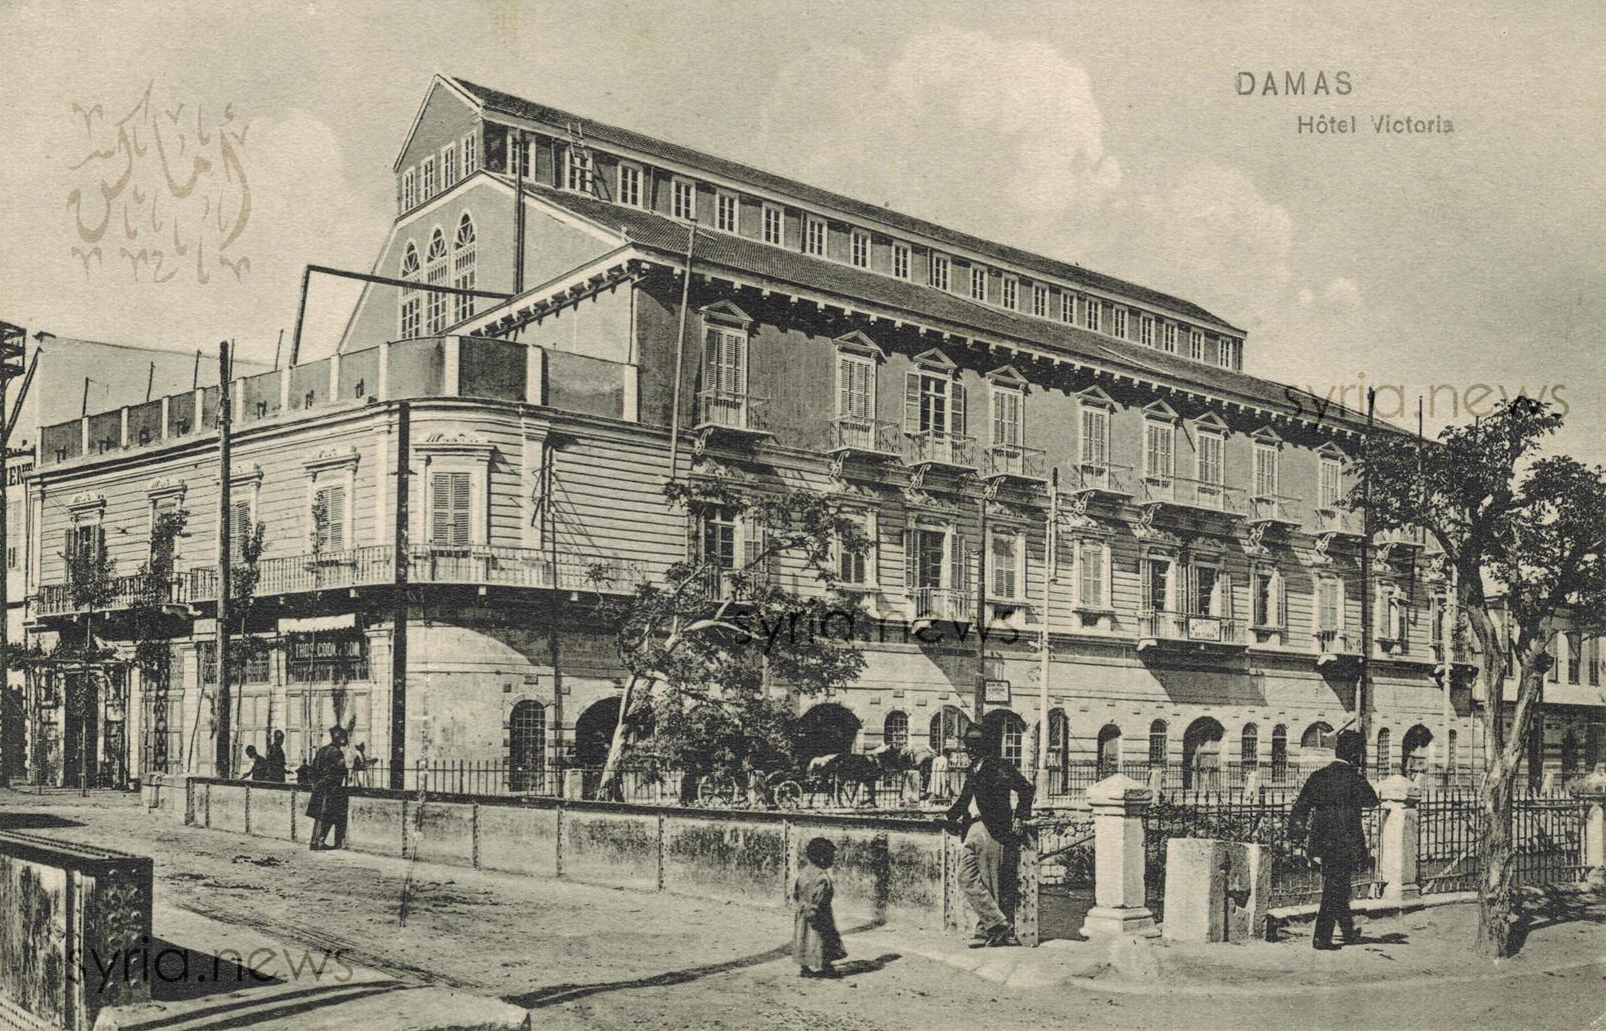 التاريخ السوري المعاصر - قصة الفندق الذي شيد في دمشق لاستقبال “الملكة التي لم تأت”